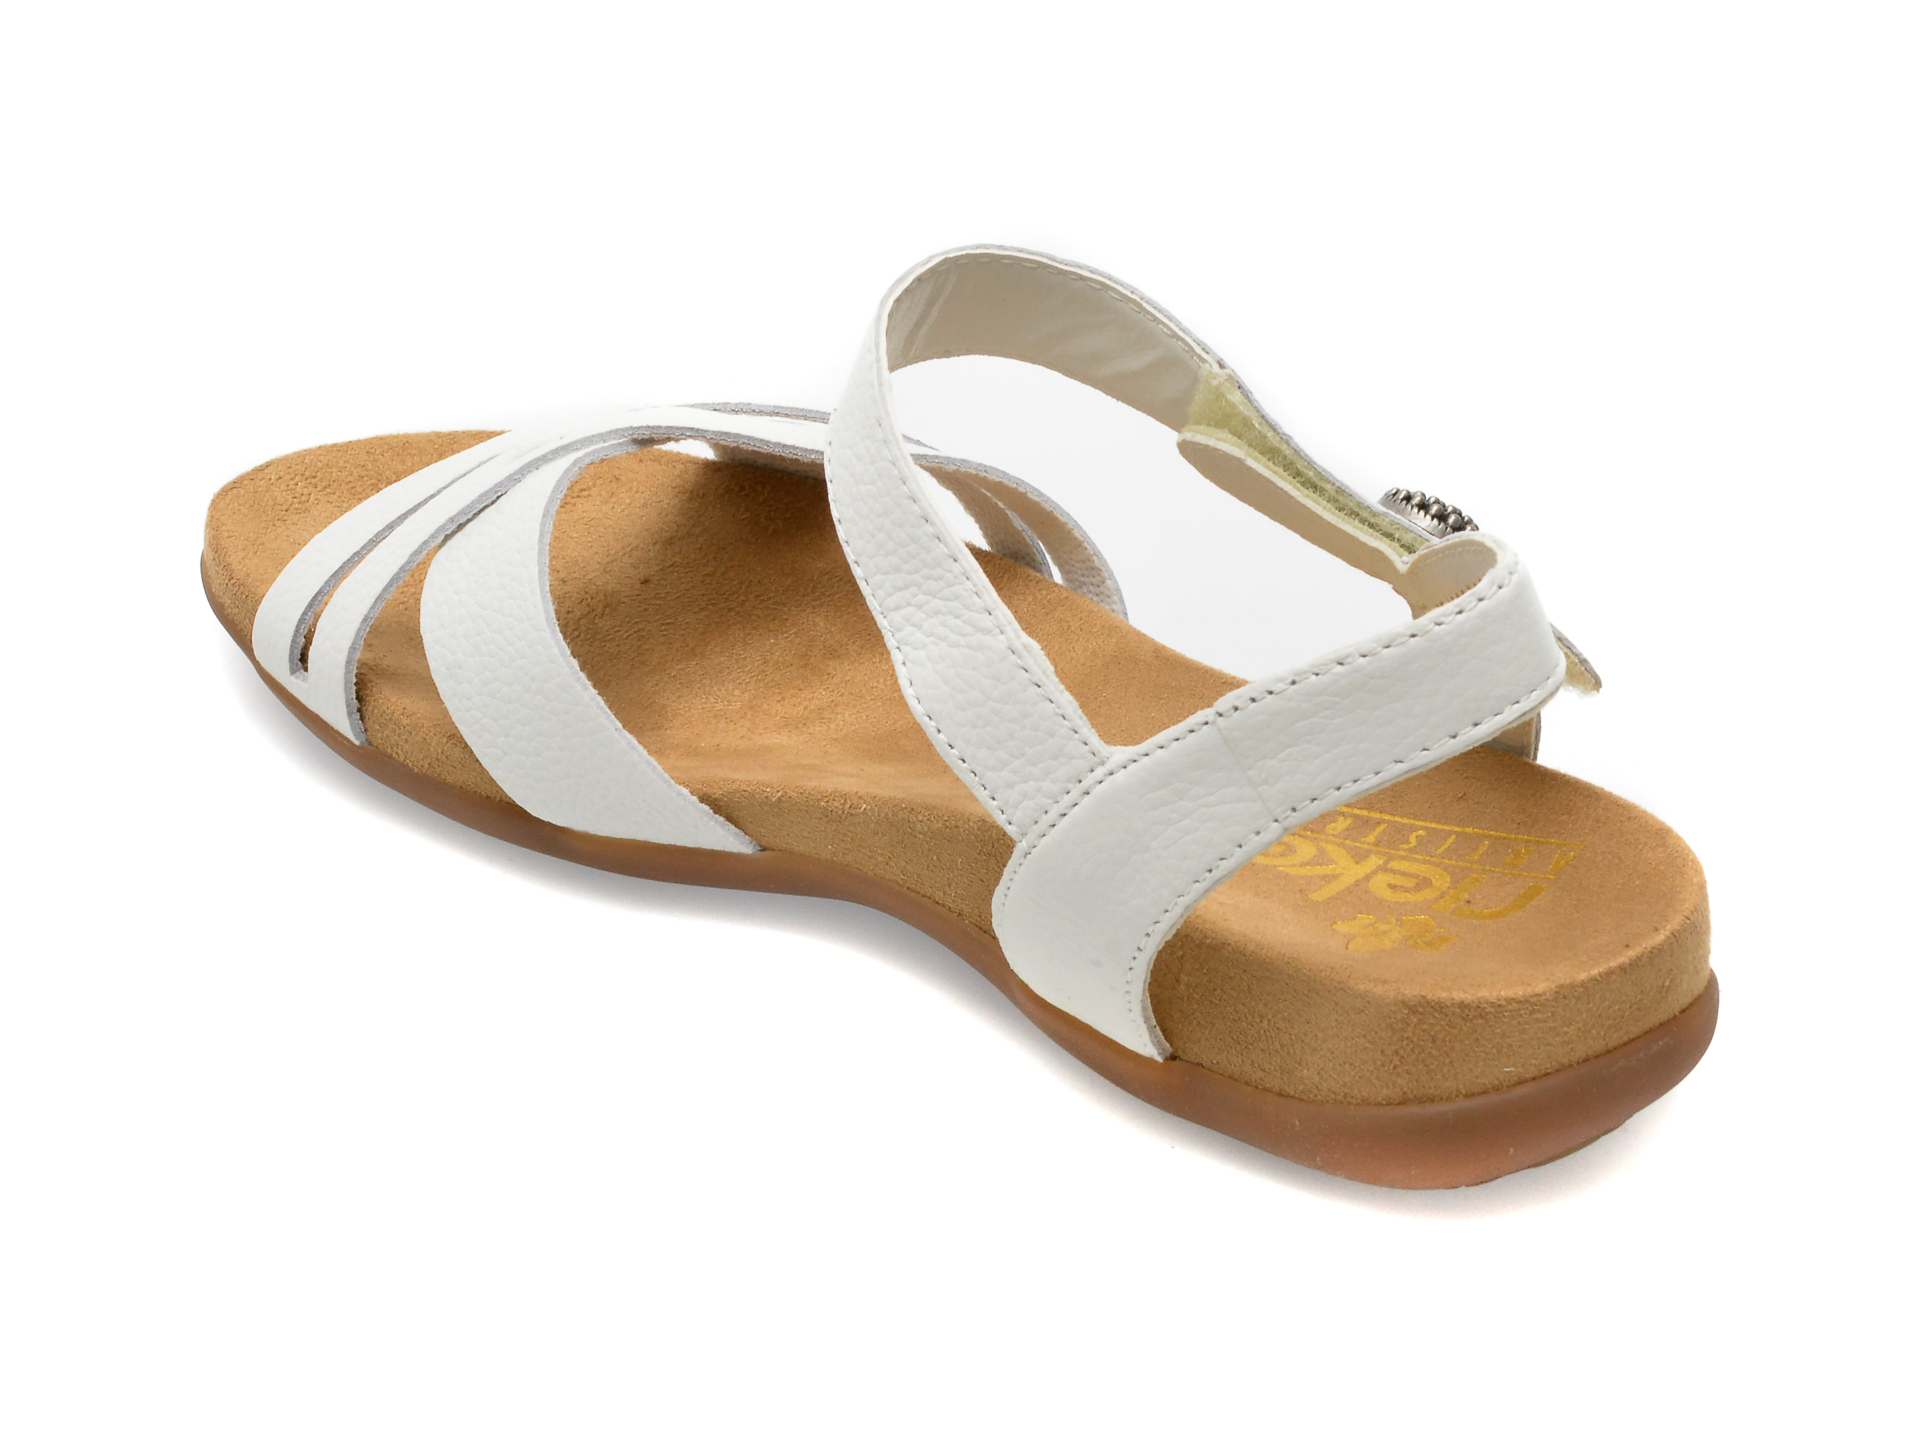 Sandale RIEKER albe, 60553, din piele naturala imagine noua